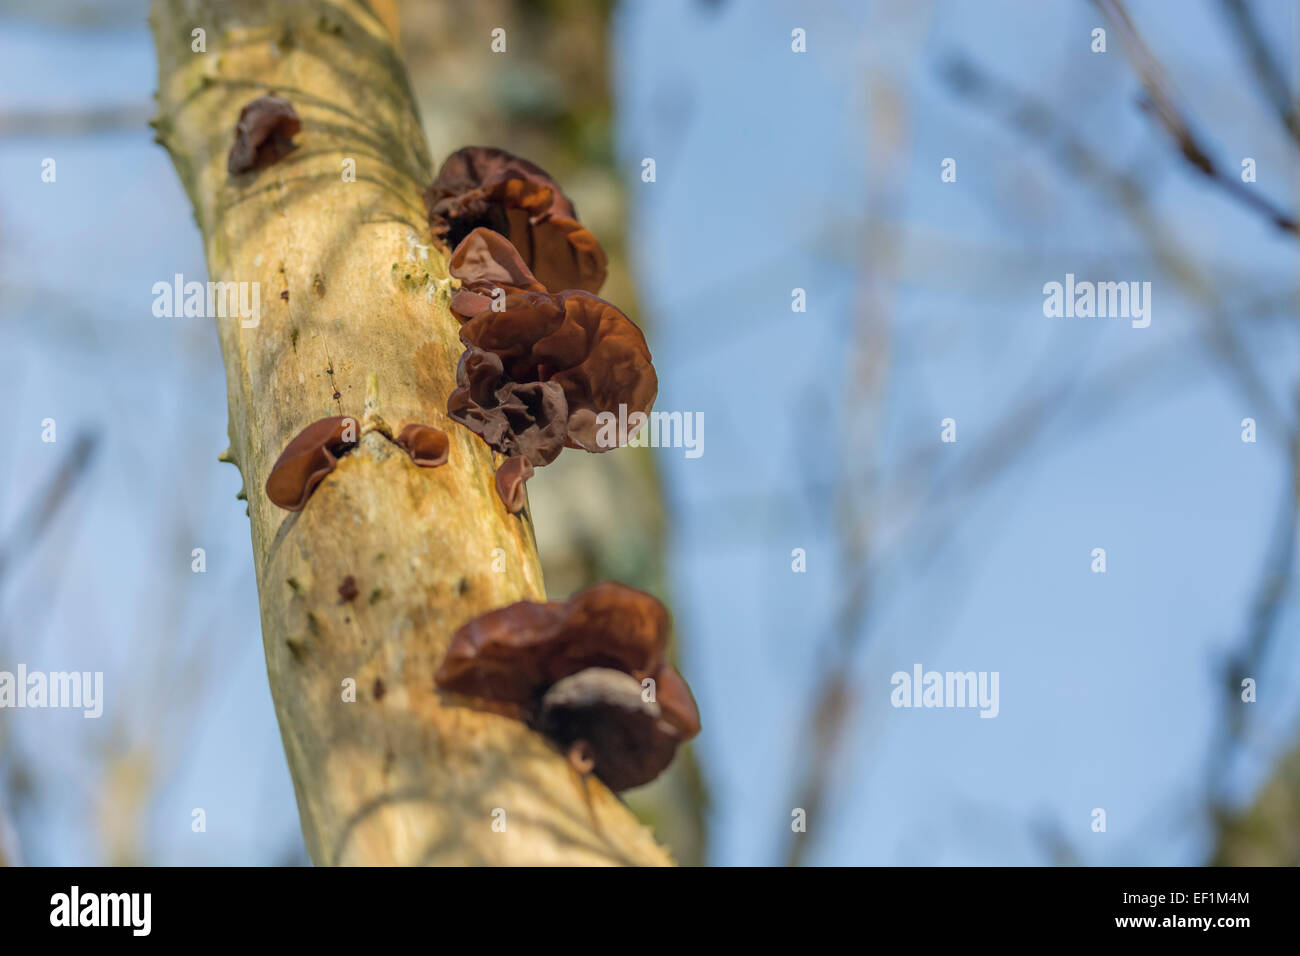 Orecchie di legno / Ear fungus dell'ebreo - Auricularia auricula-judae - su anziano comune / Sambucus nigra. Foraggio, forato cibo, legno orecchi funghi. Foto Stock